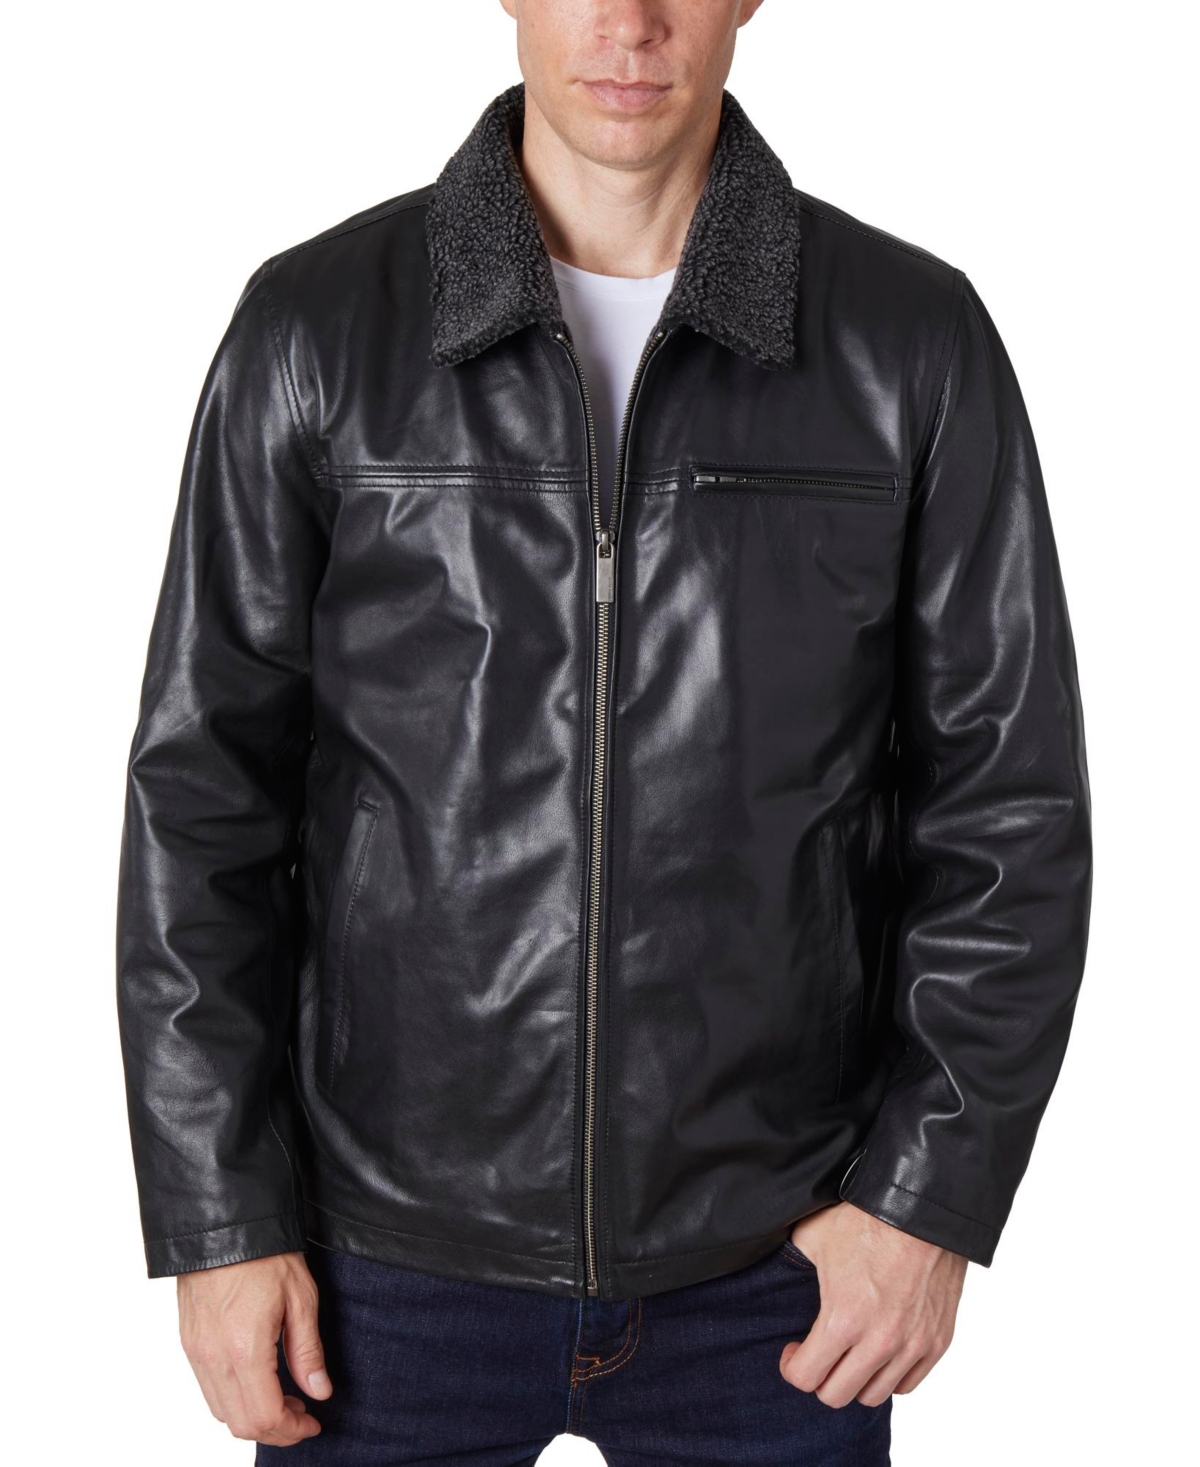 Men's Zipper Leather Jacket - Brown